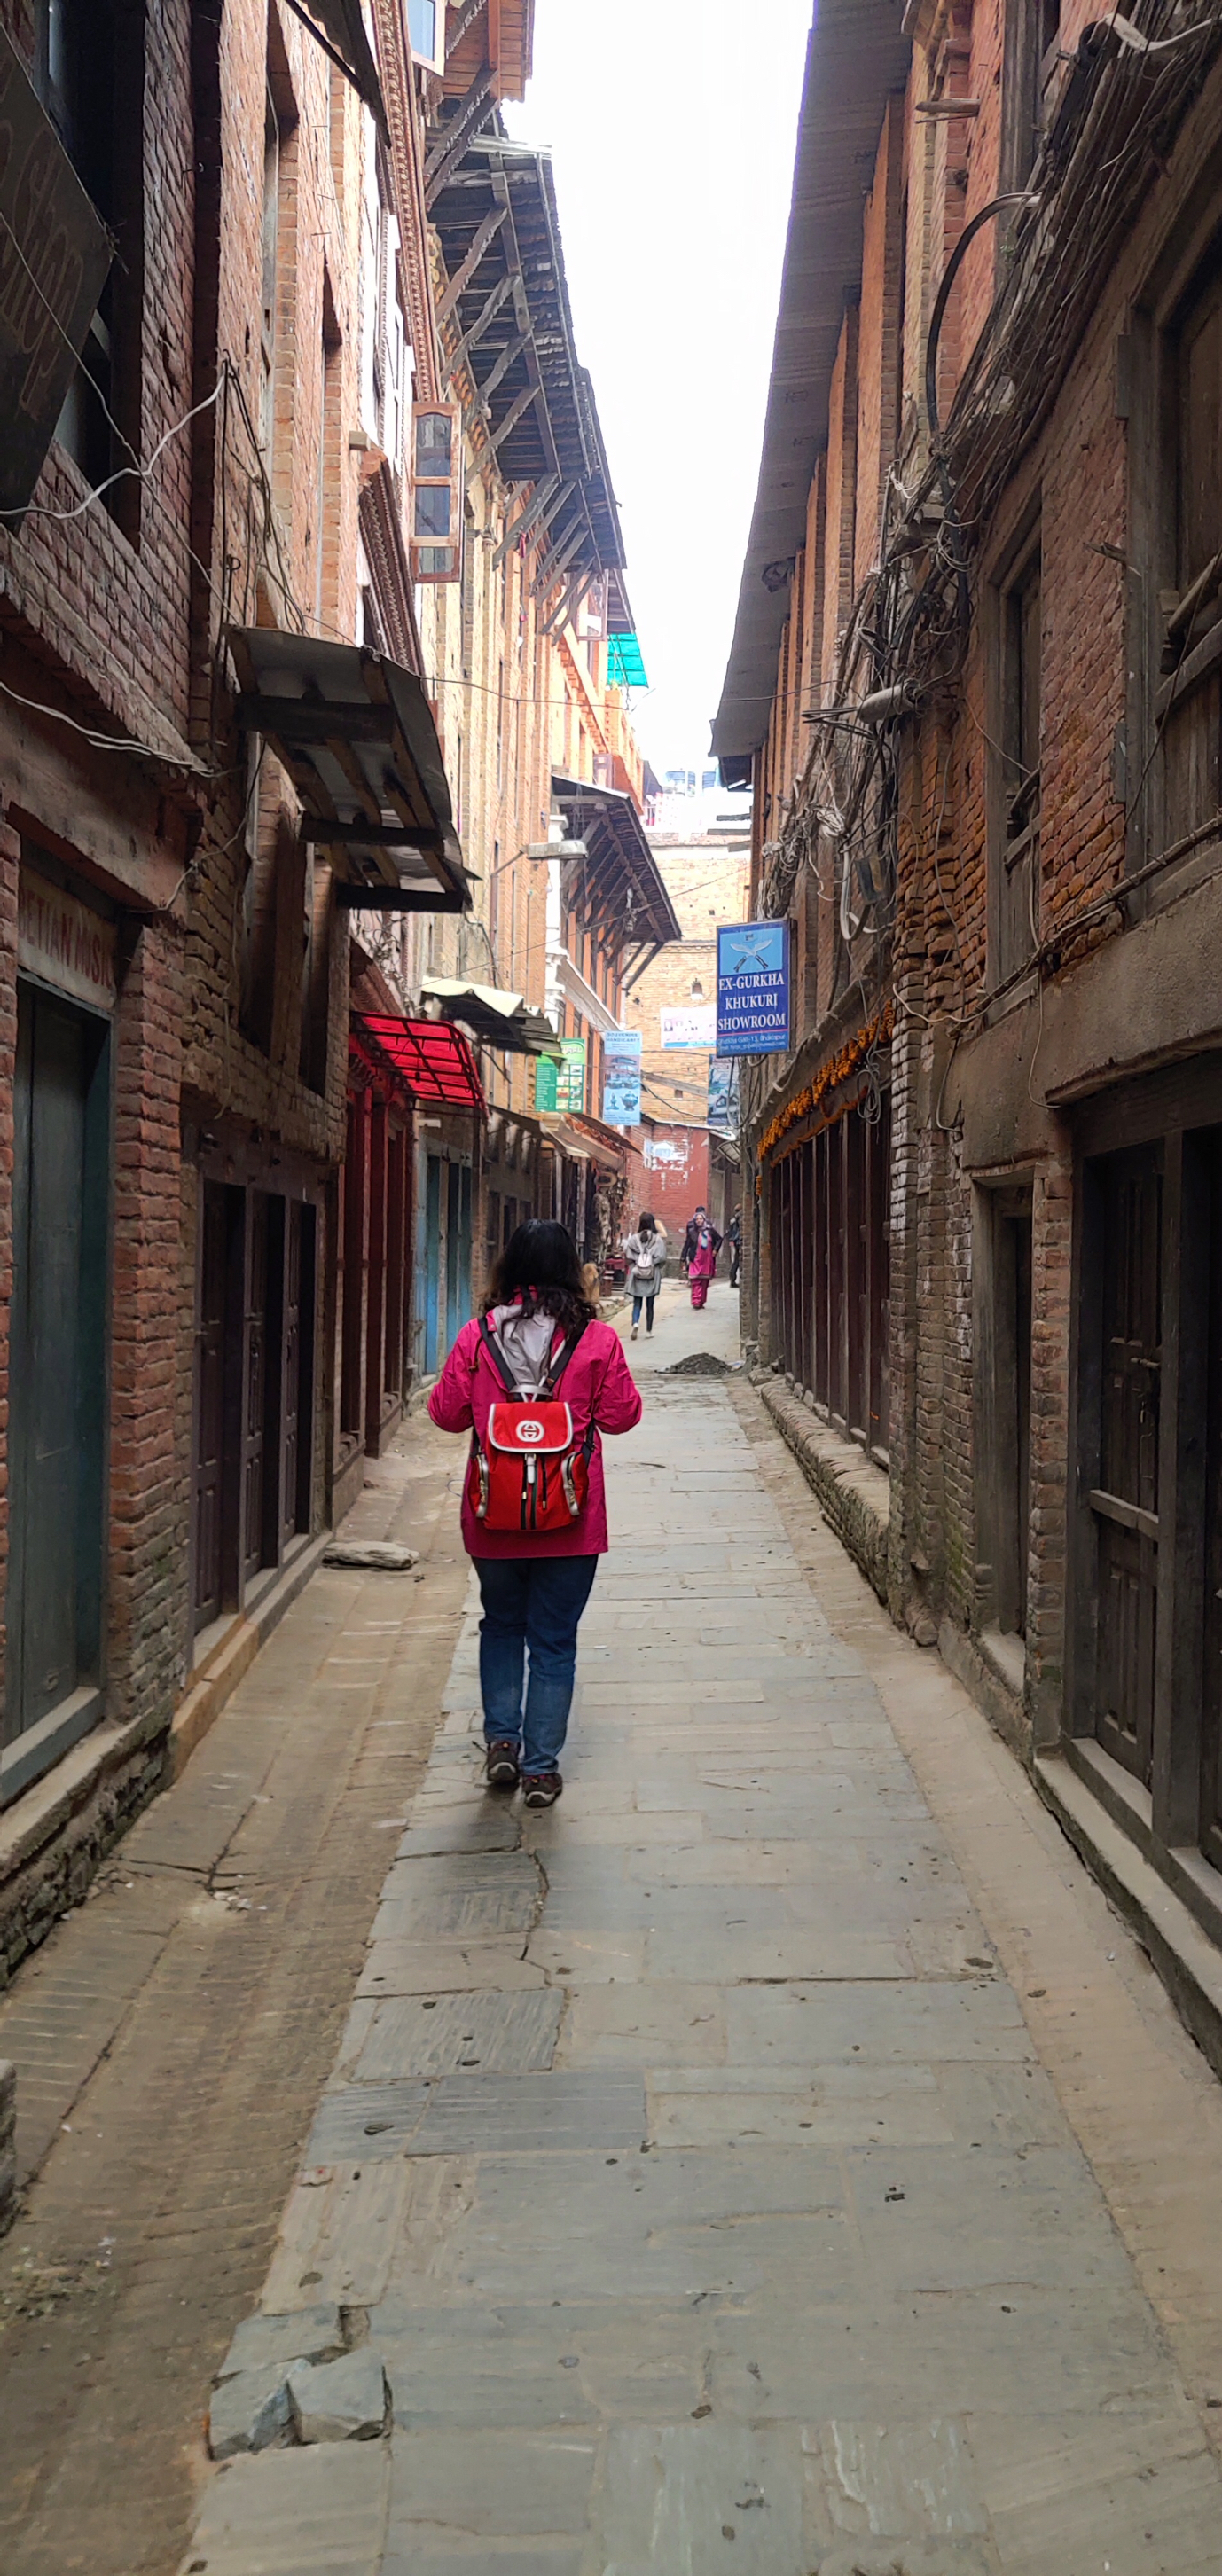 漫步在尼泊尔的杜巴广场附近的胡同里，到处是古色古香的建筑，古老而神秘，望而生畏